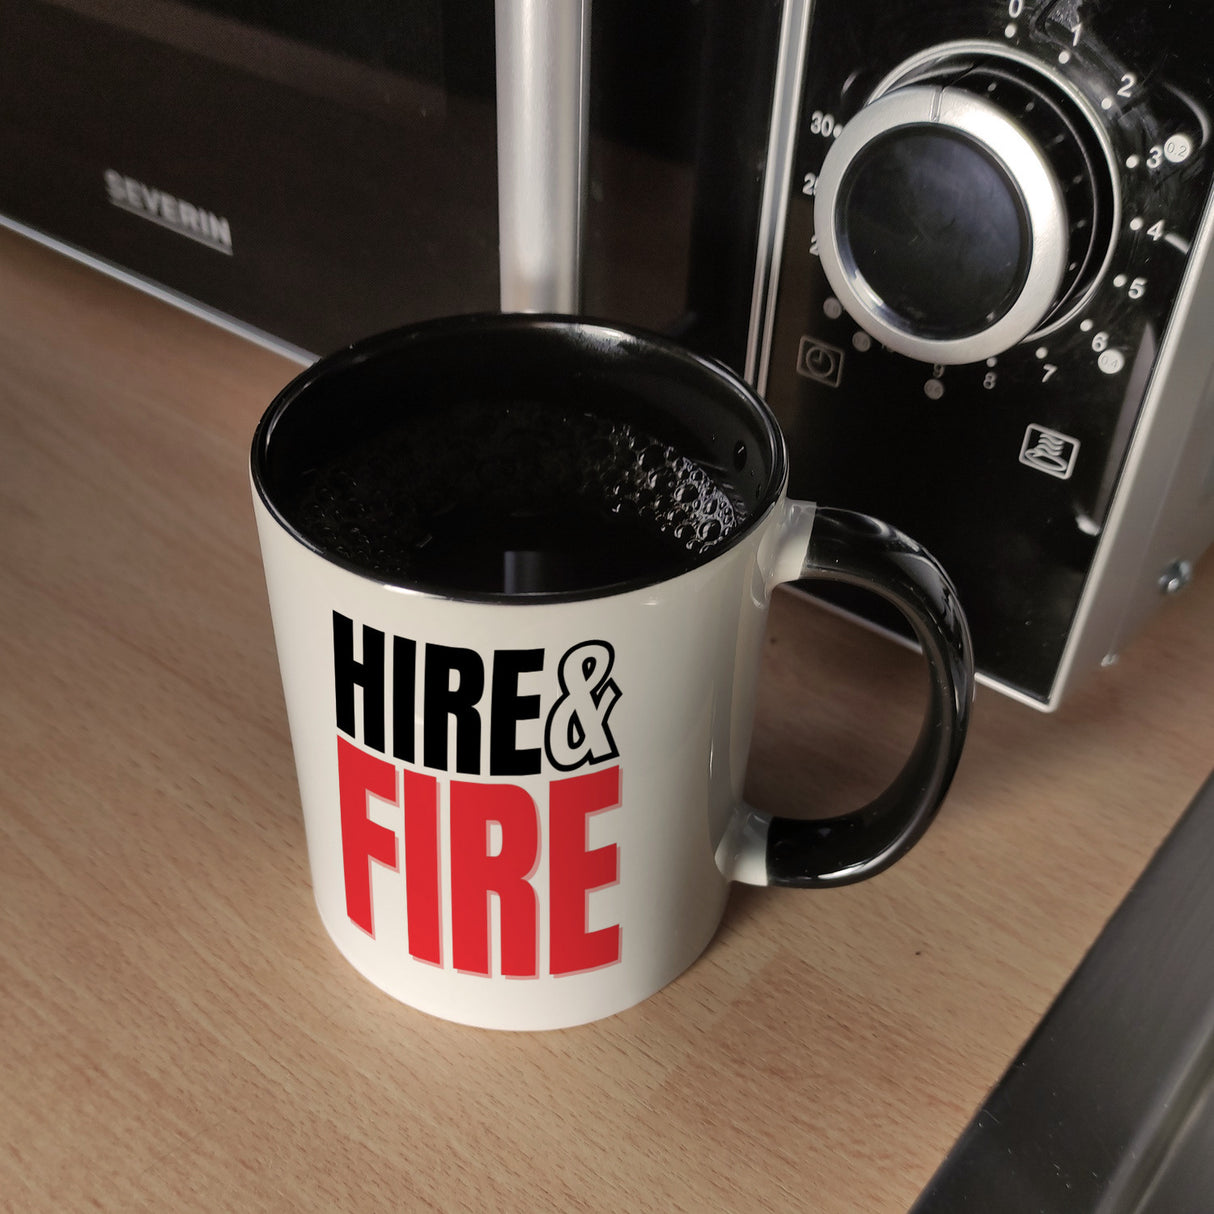 Chef und Boss Kaffeebecher mit Spruch Hire & fire